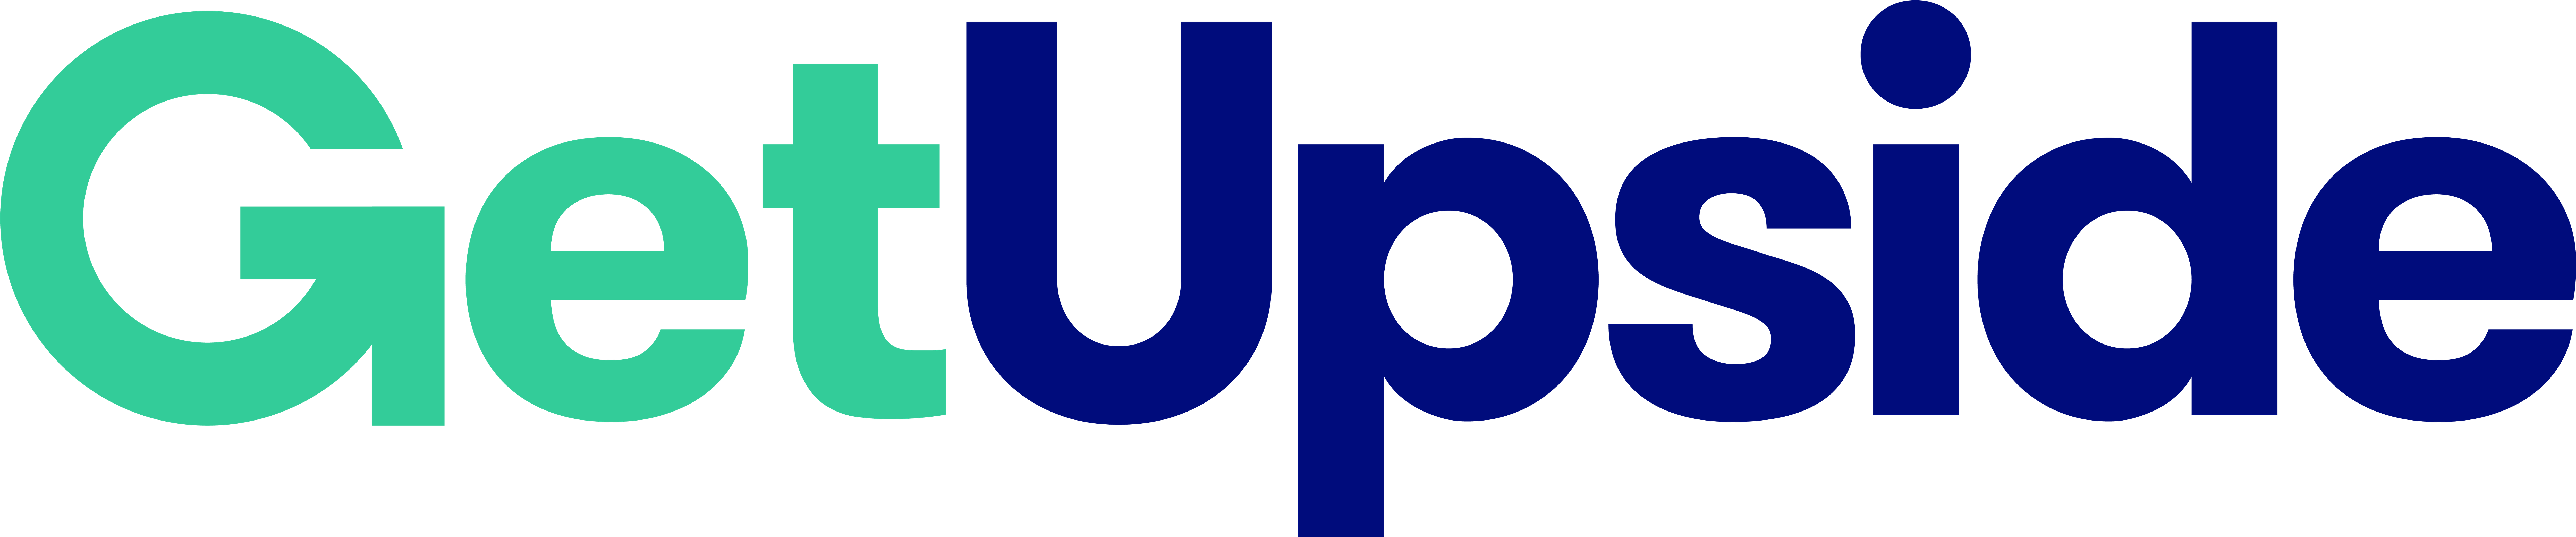 GetUpside logo